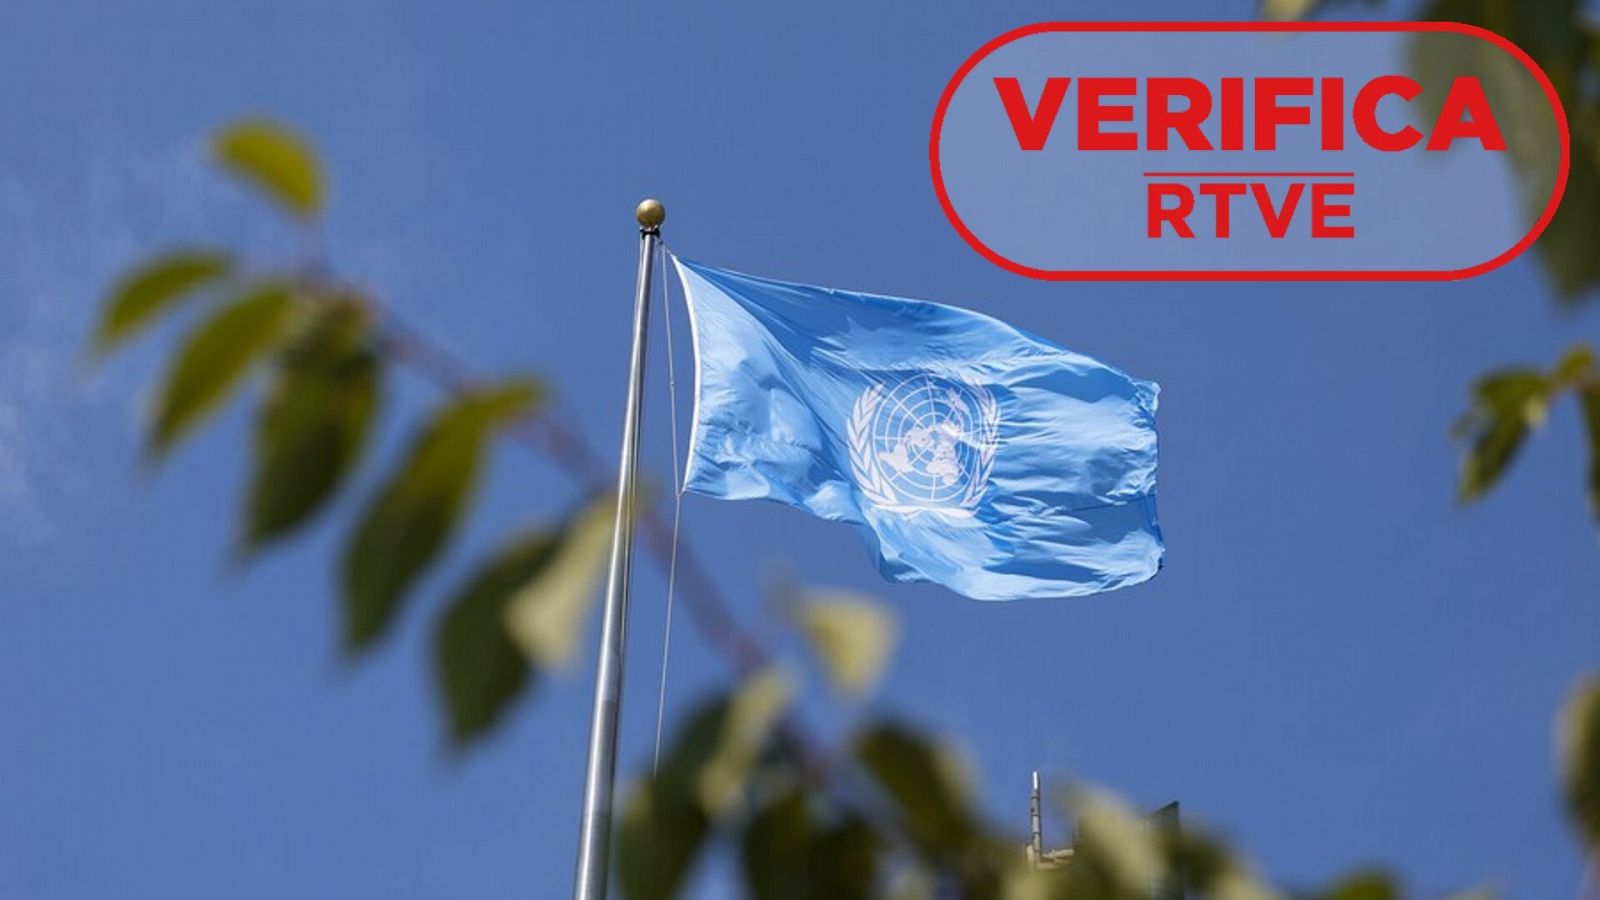 Asamblea General de la ONU: falsedades y manipulaciones sobre la organización multilateral. Una bandera azul con el logo de la ONU. Sello VerificaRTVE.